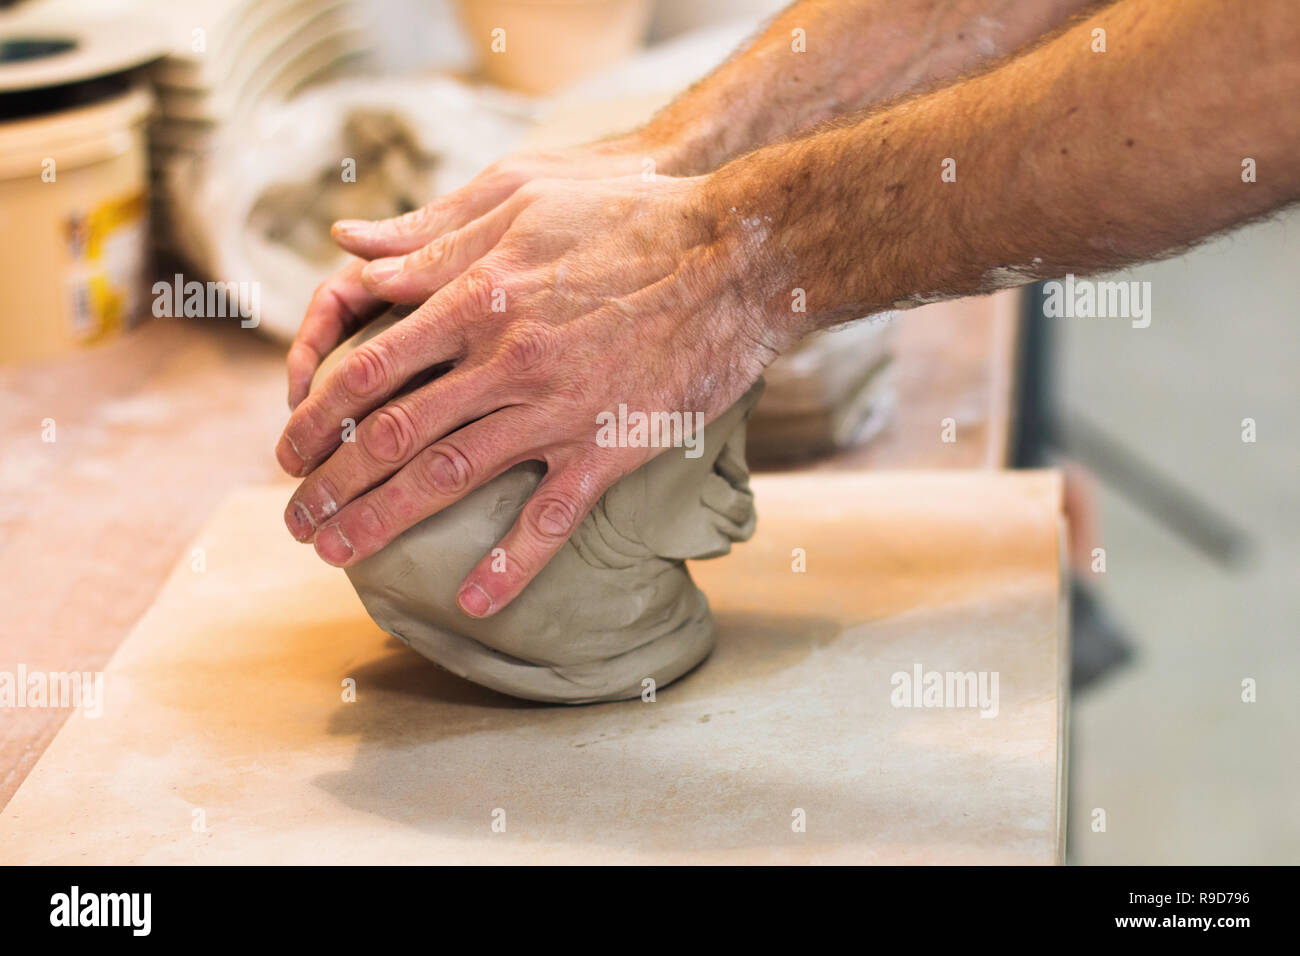 Artist Potter in der Werkstatt Vorbereiten von Material für eine Keramik Vase. Hände Detail Nahaufnahme. Kleine künstlerische Handwerker Business Konzept. Stockfoto